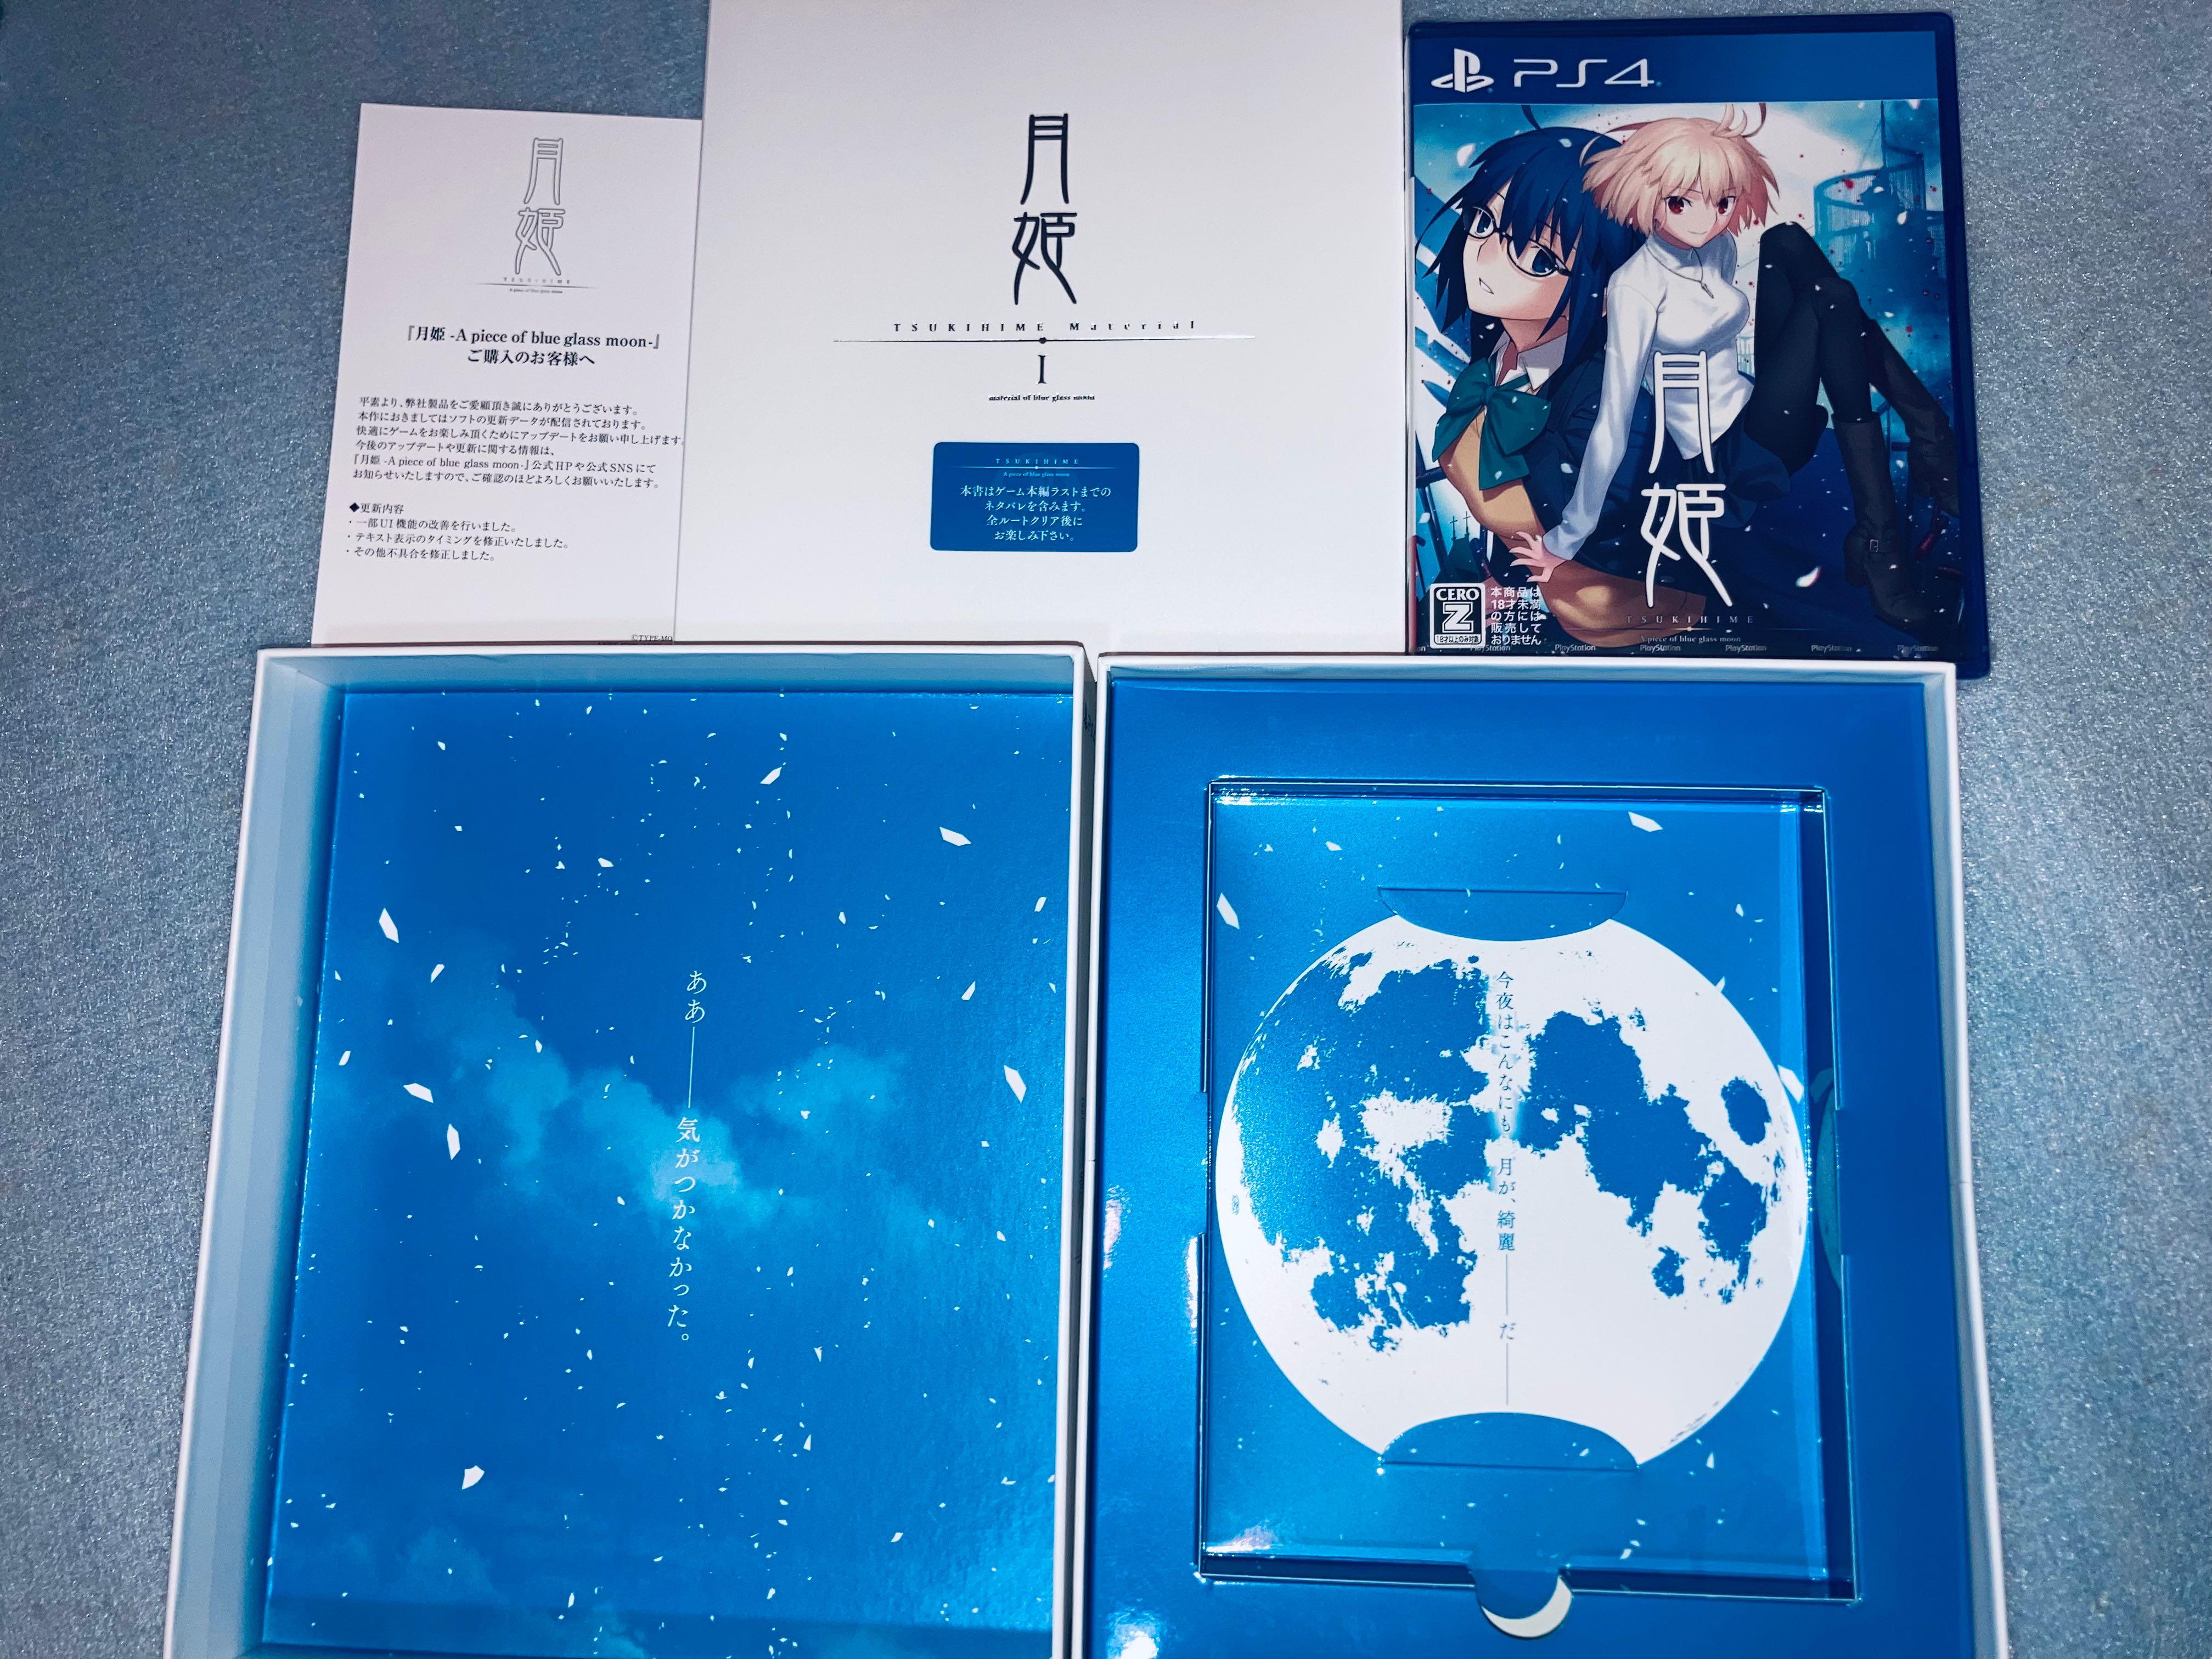 月姫初回限定版-A piece of blue glass moon- 初回限定版, 電子遊戲